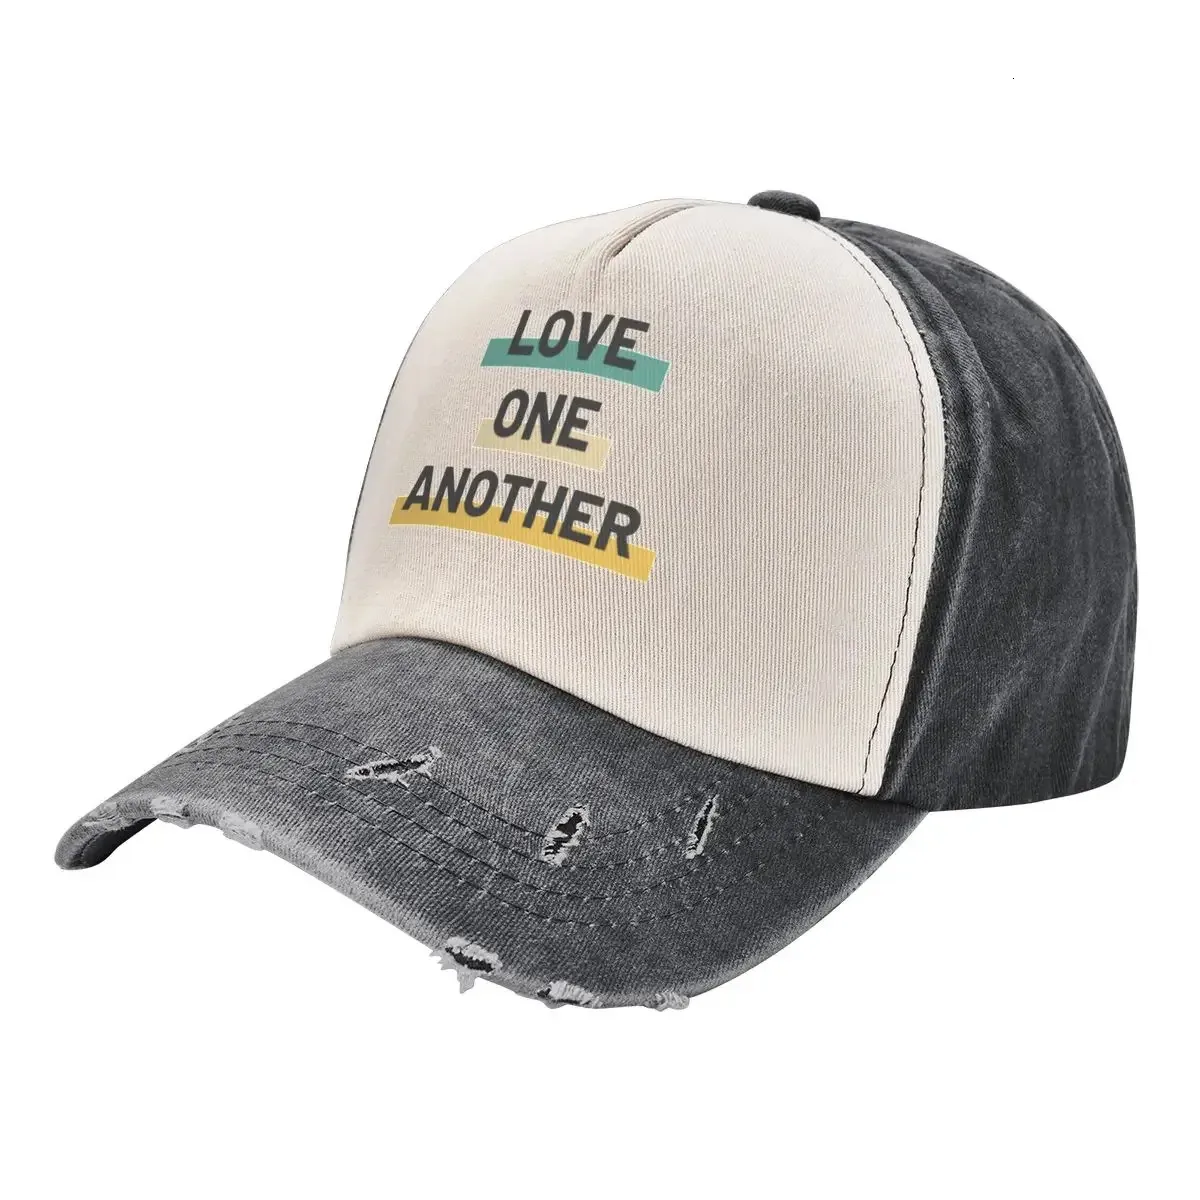 Kochajcie się nawzajem II pozytywne szczęśliwe cytat retro inspirujący czapka baseballowa w hat golf damskie męskie 240416